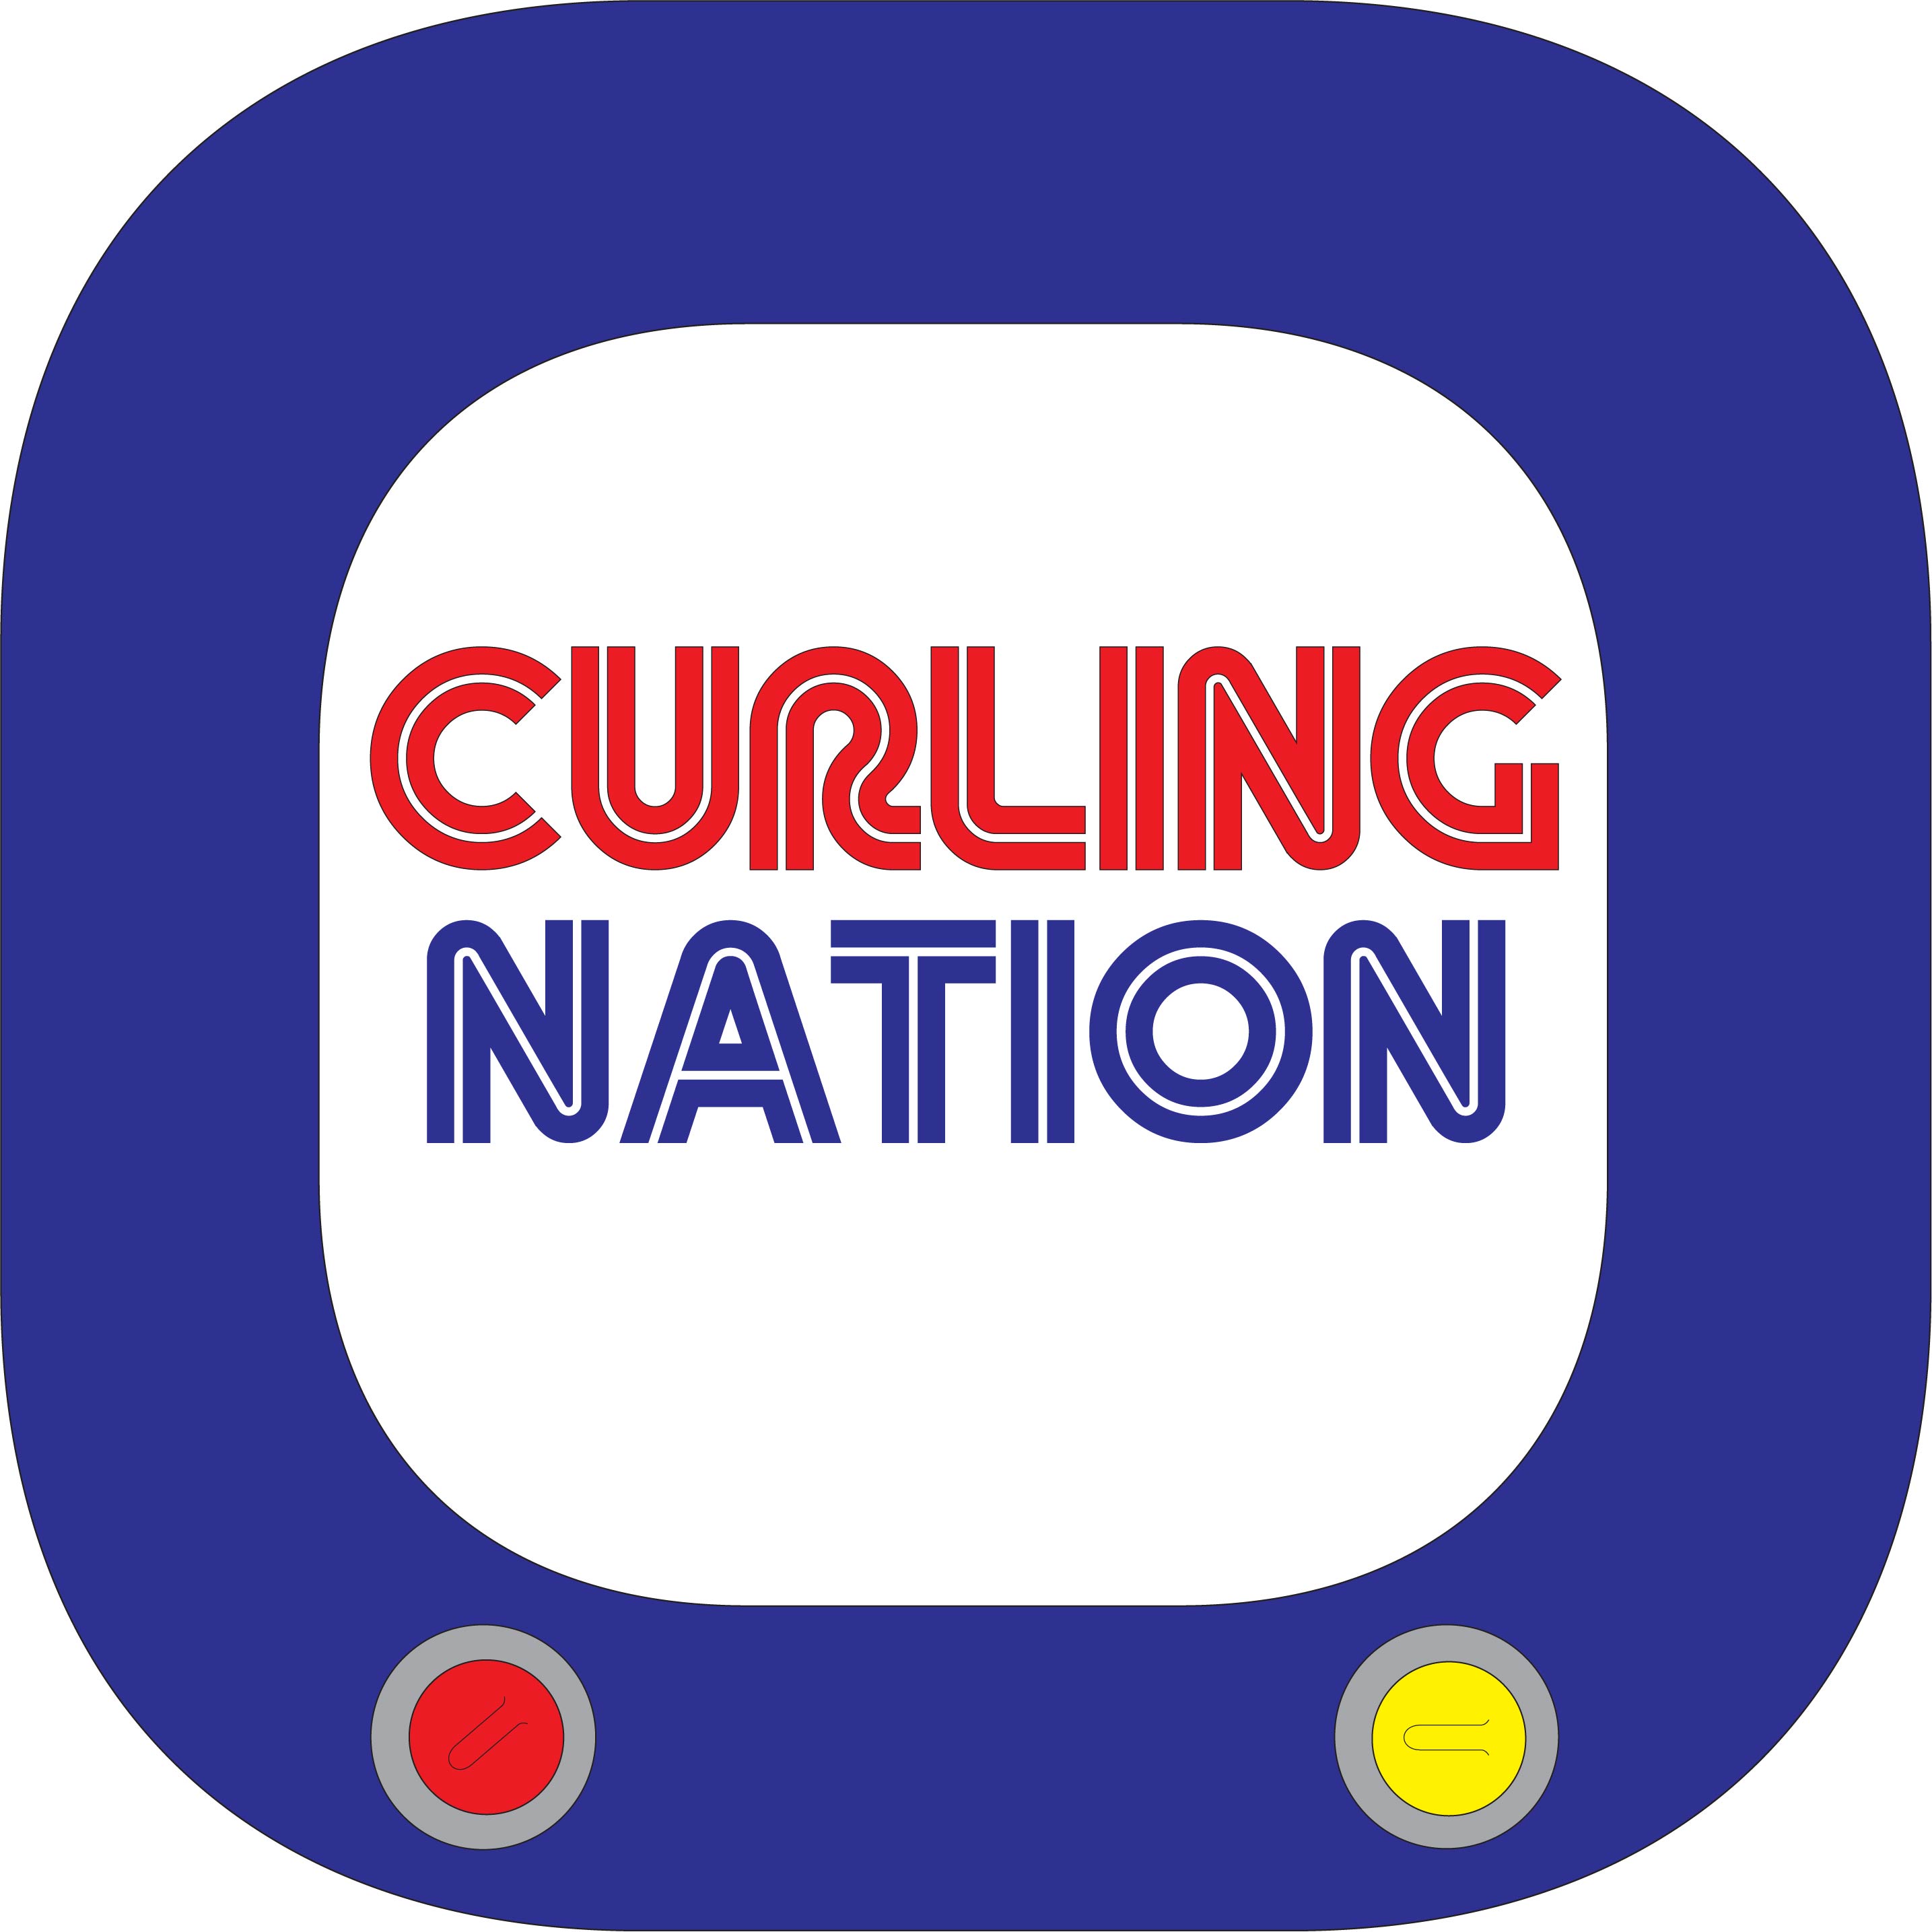 Curling Nation